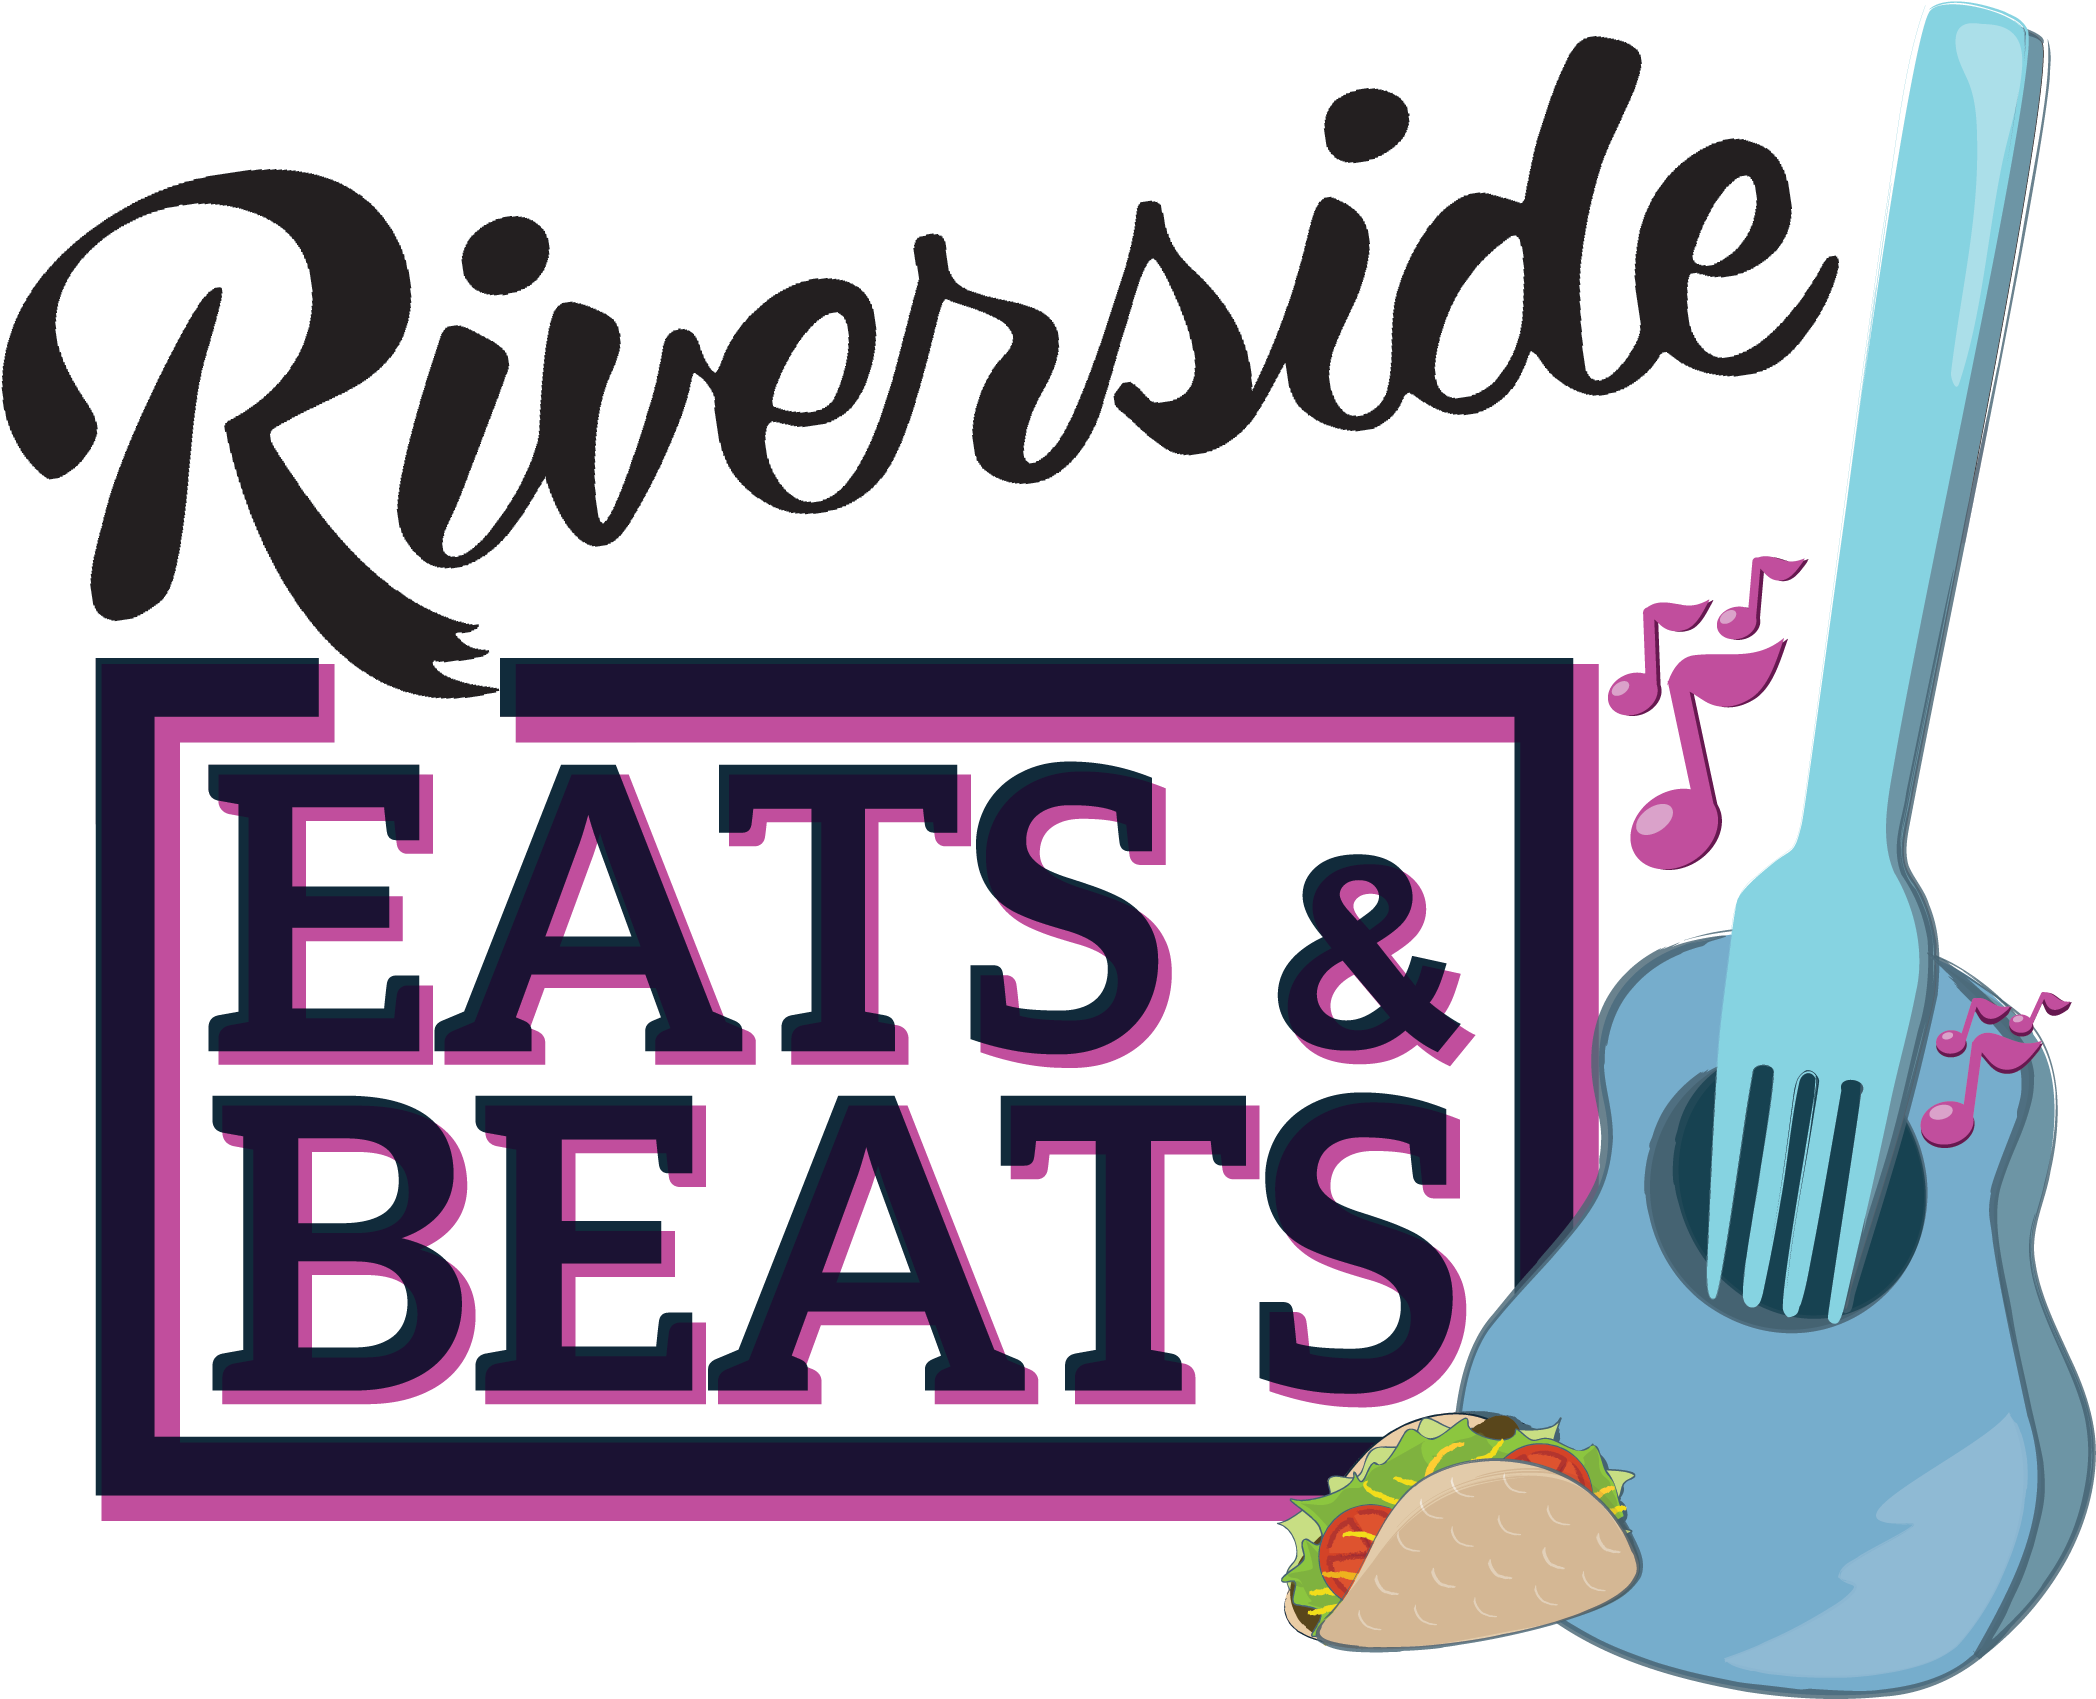 Riverside Eats And Beats - Riverside Eats & Beats Streetfest (2177x1756)